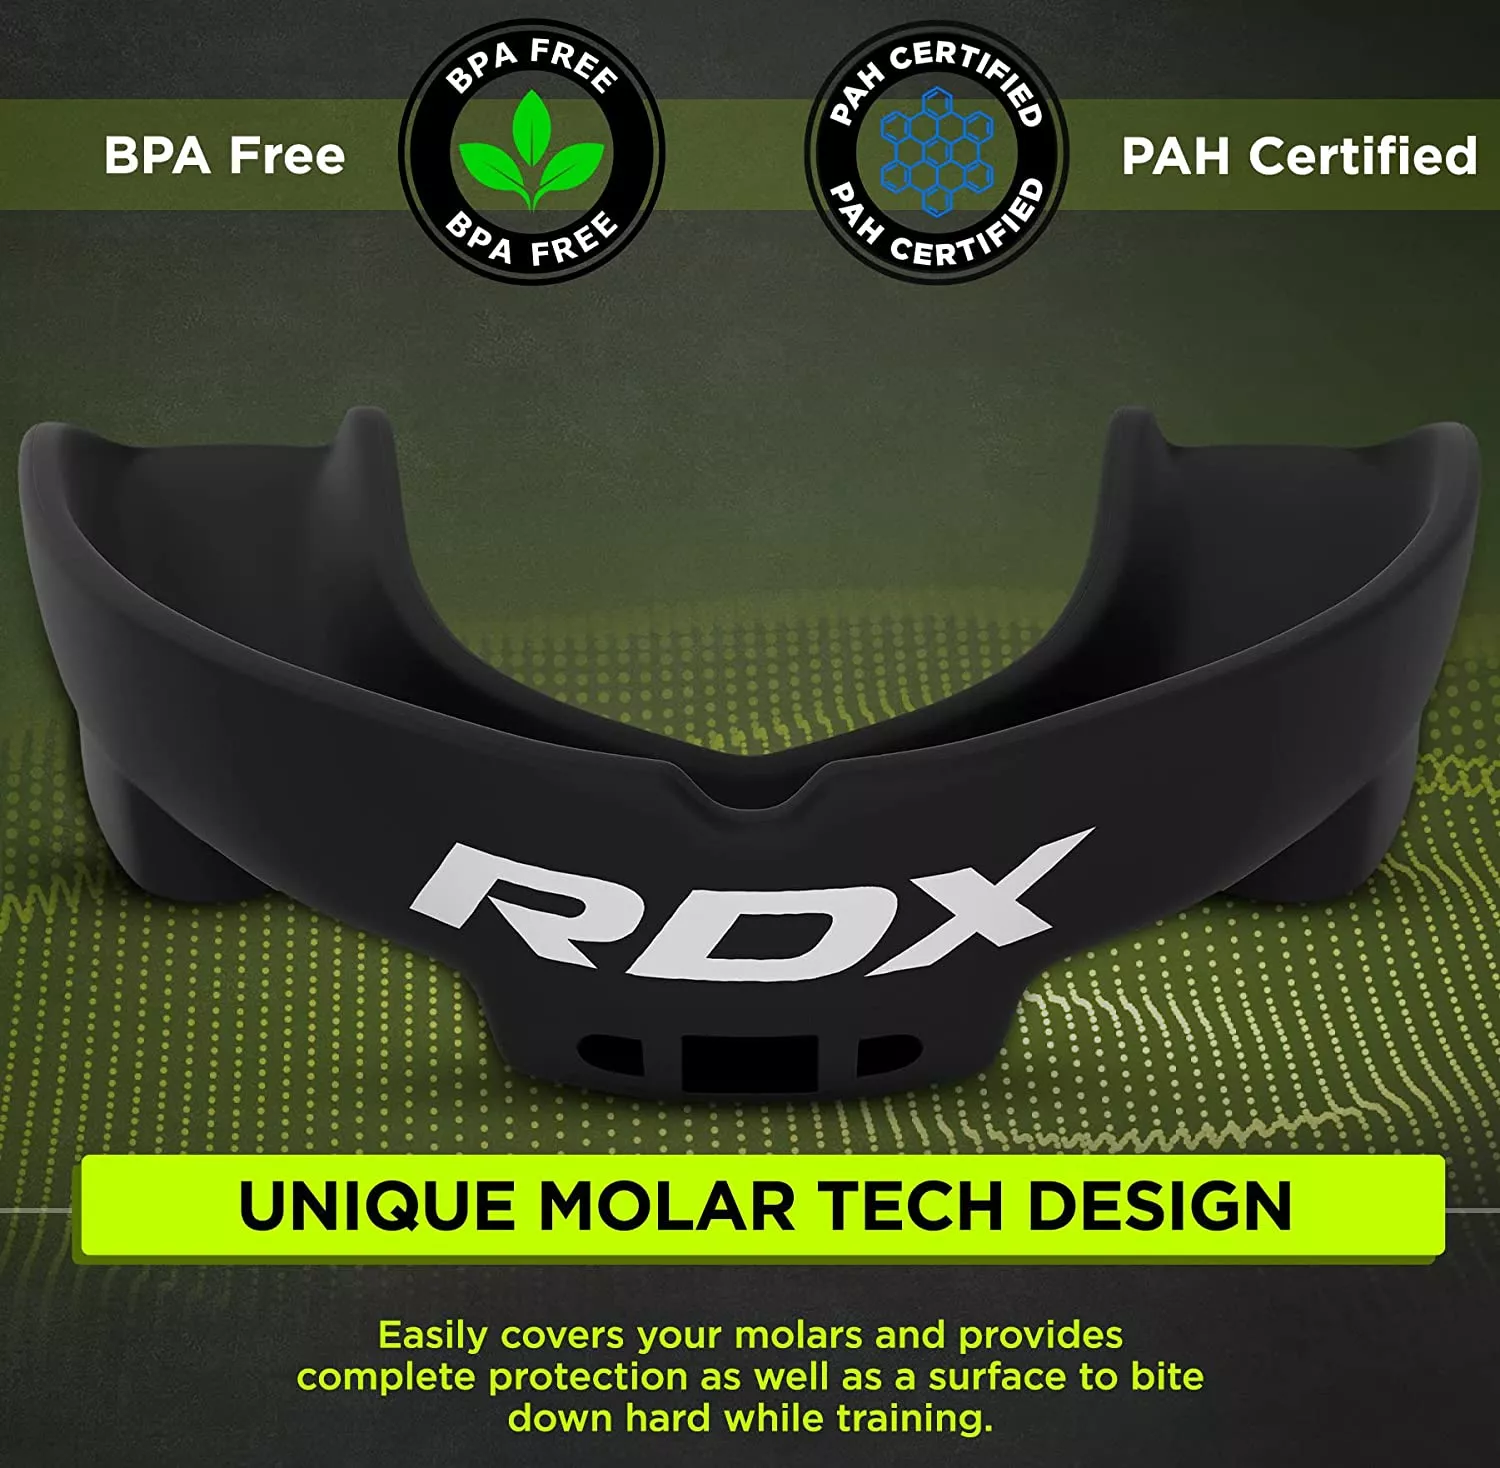 Капа боксерська RDX Gel 3D Pro Black-доросла